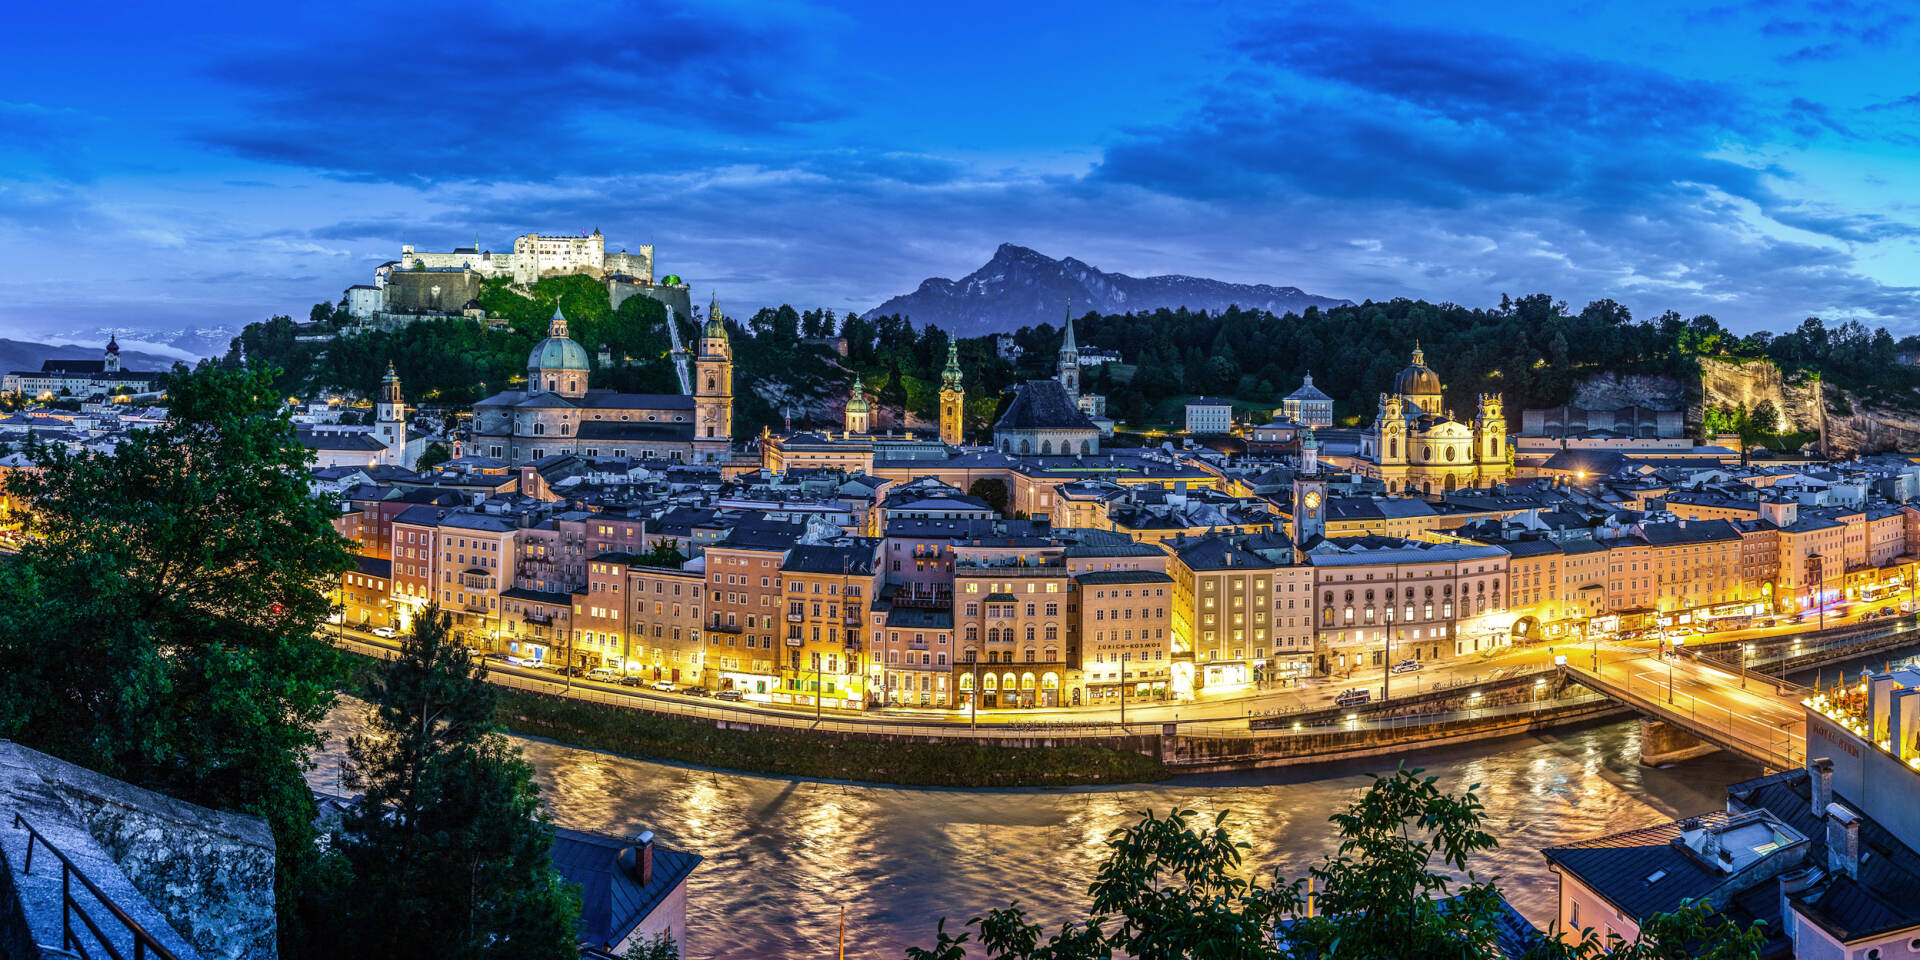 Salzburg panorama at night © Tourismus Salzburg GmbH